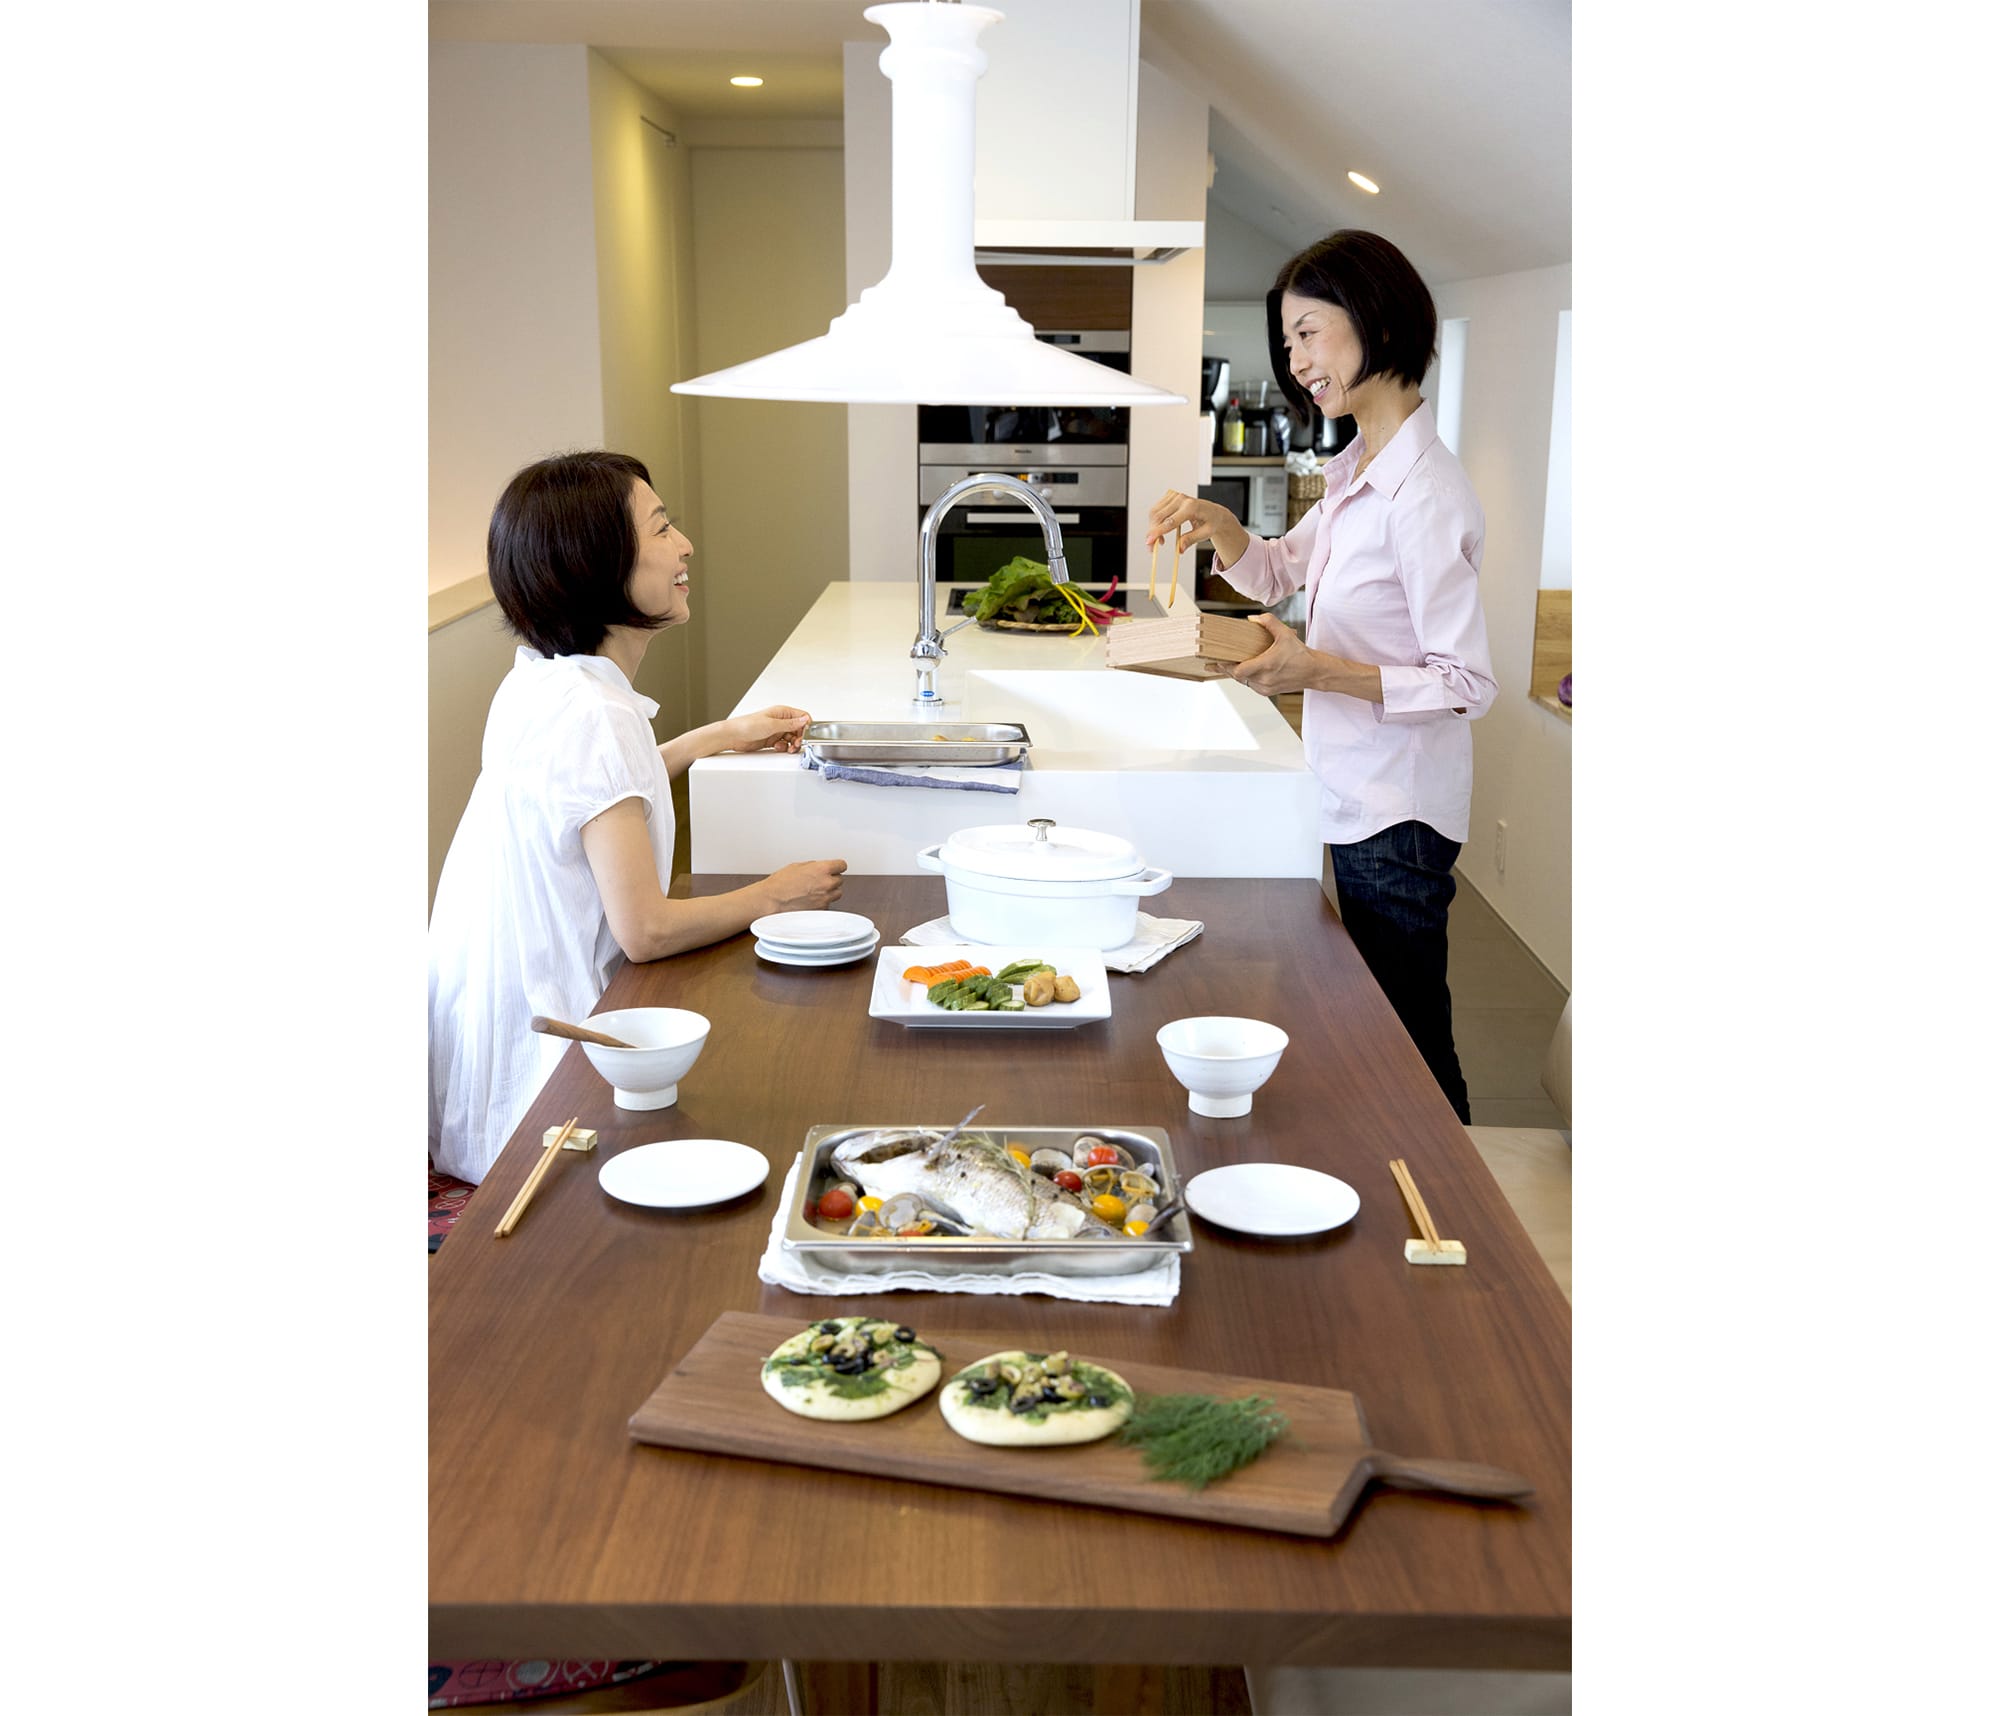 限られたスペースを生かしたキッチン。まるで家具のように美しいディテールのキッチンなら、ダイニングテーブルの延長線上においても違和感はない。 キッチン製作＝リネアタラーラ  Photography by Takuya Neda